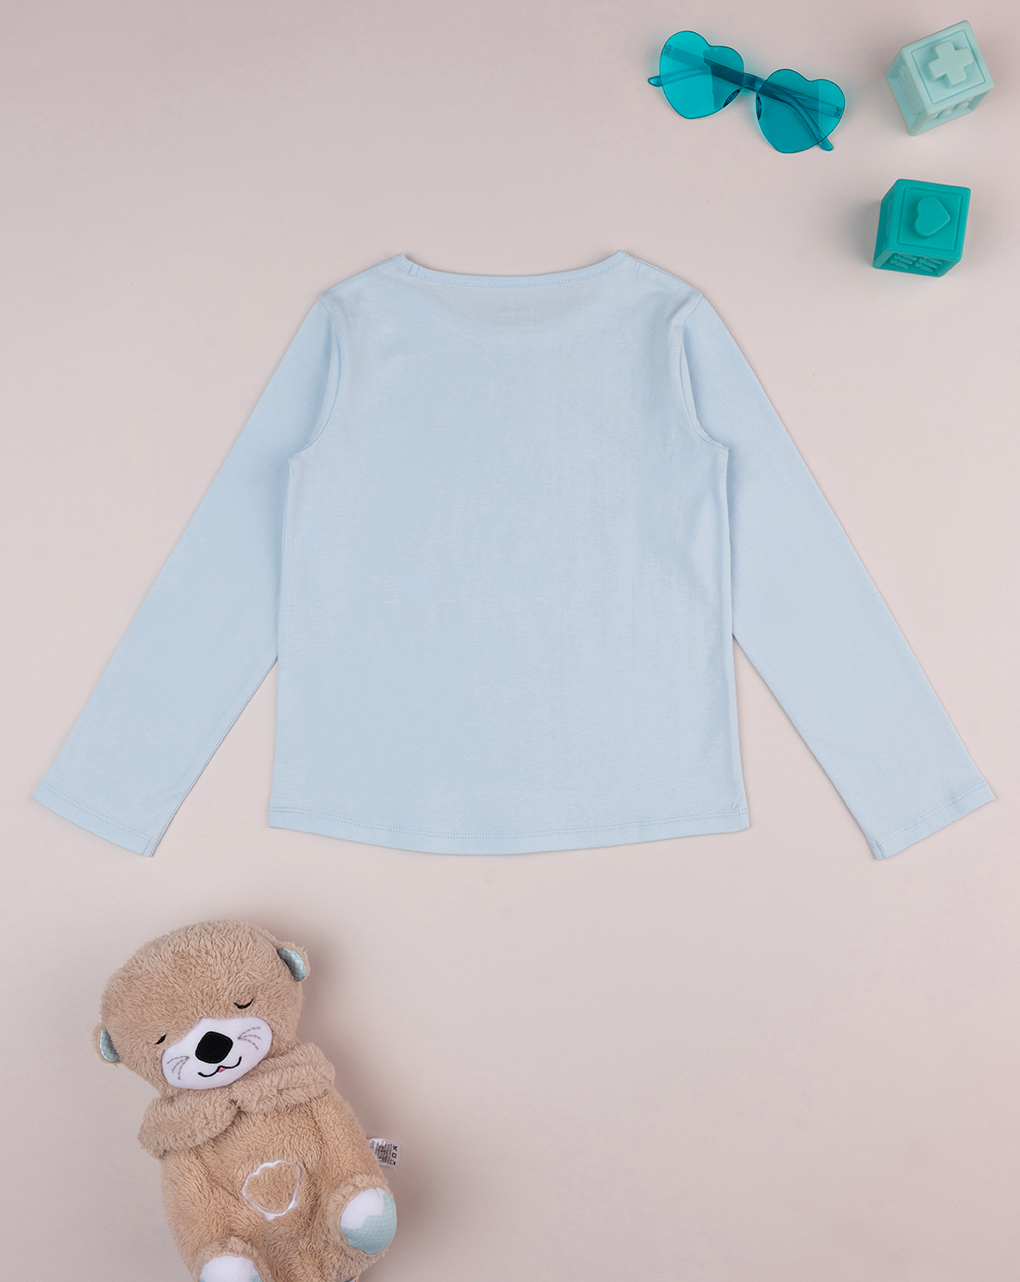 παιδική μπλούζα γαλάζια με αρκουδάκι για κορίτσι - Prénatal